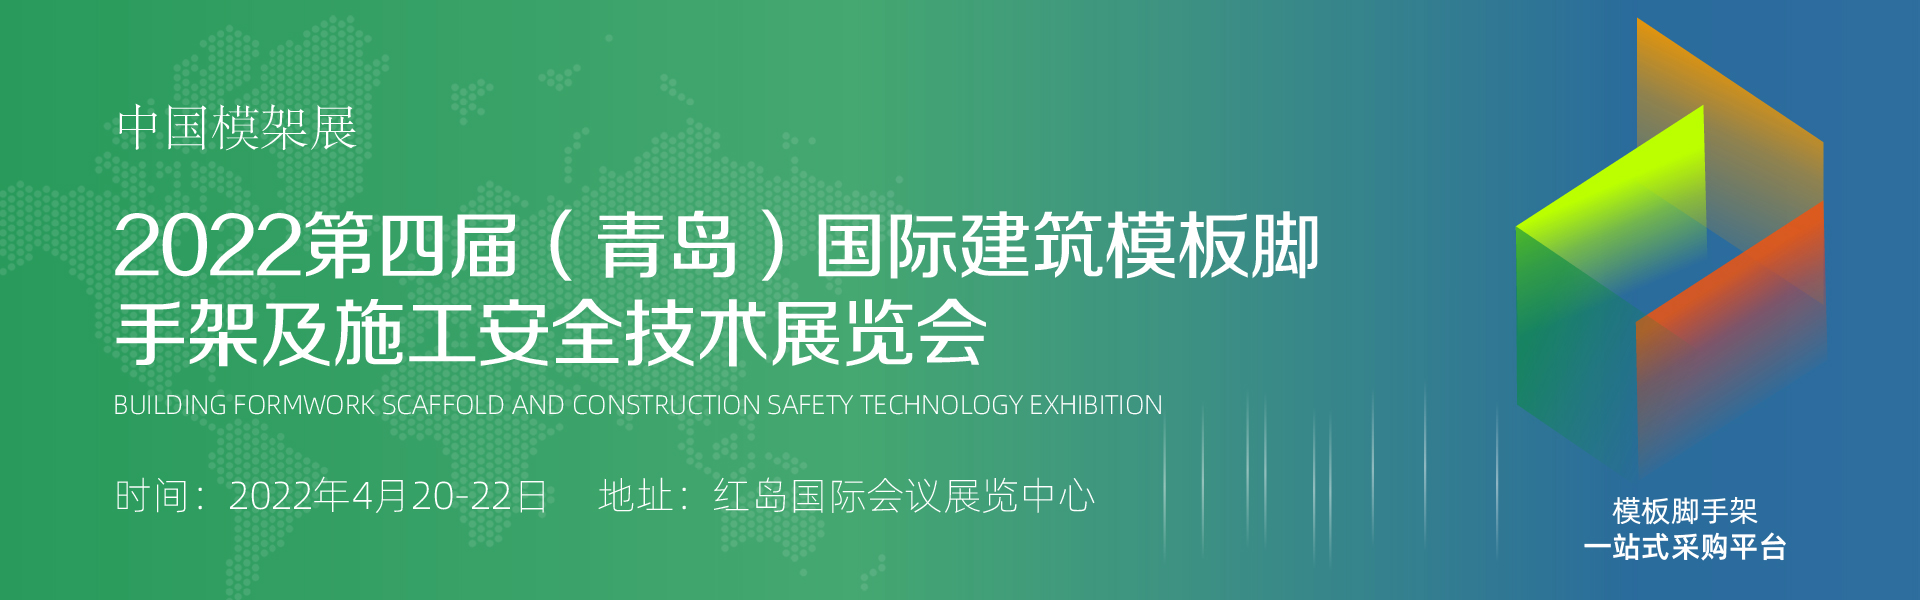 2022四届 中国青岛建筑模板脚手架及施工安全技术展览会